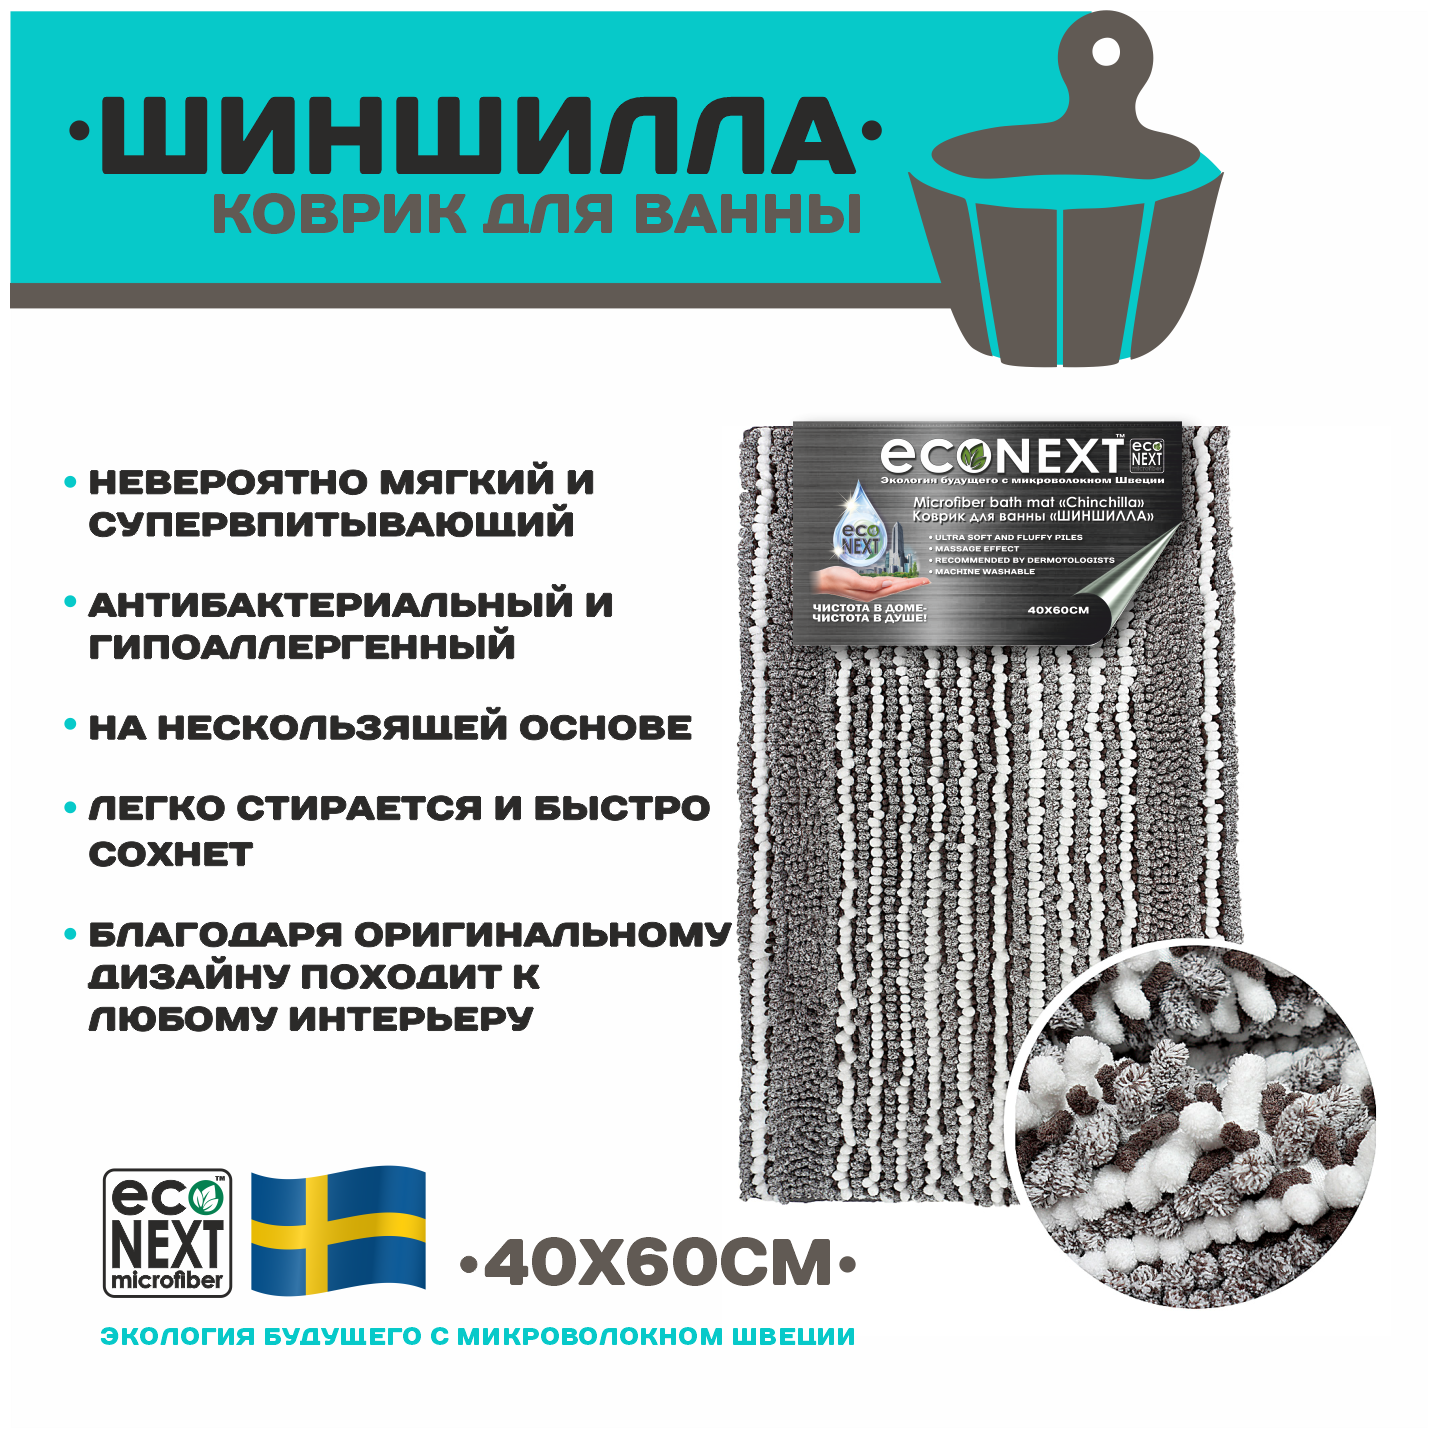 Коврик ECONEXT microfiber для ванной и туалета противоскользящий 40х60